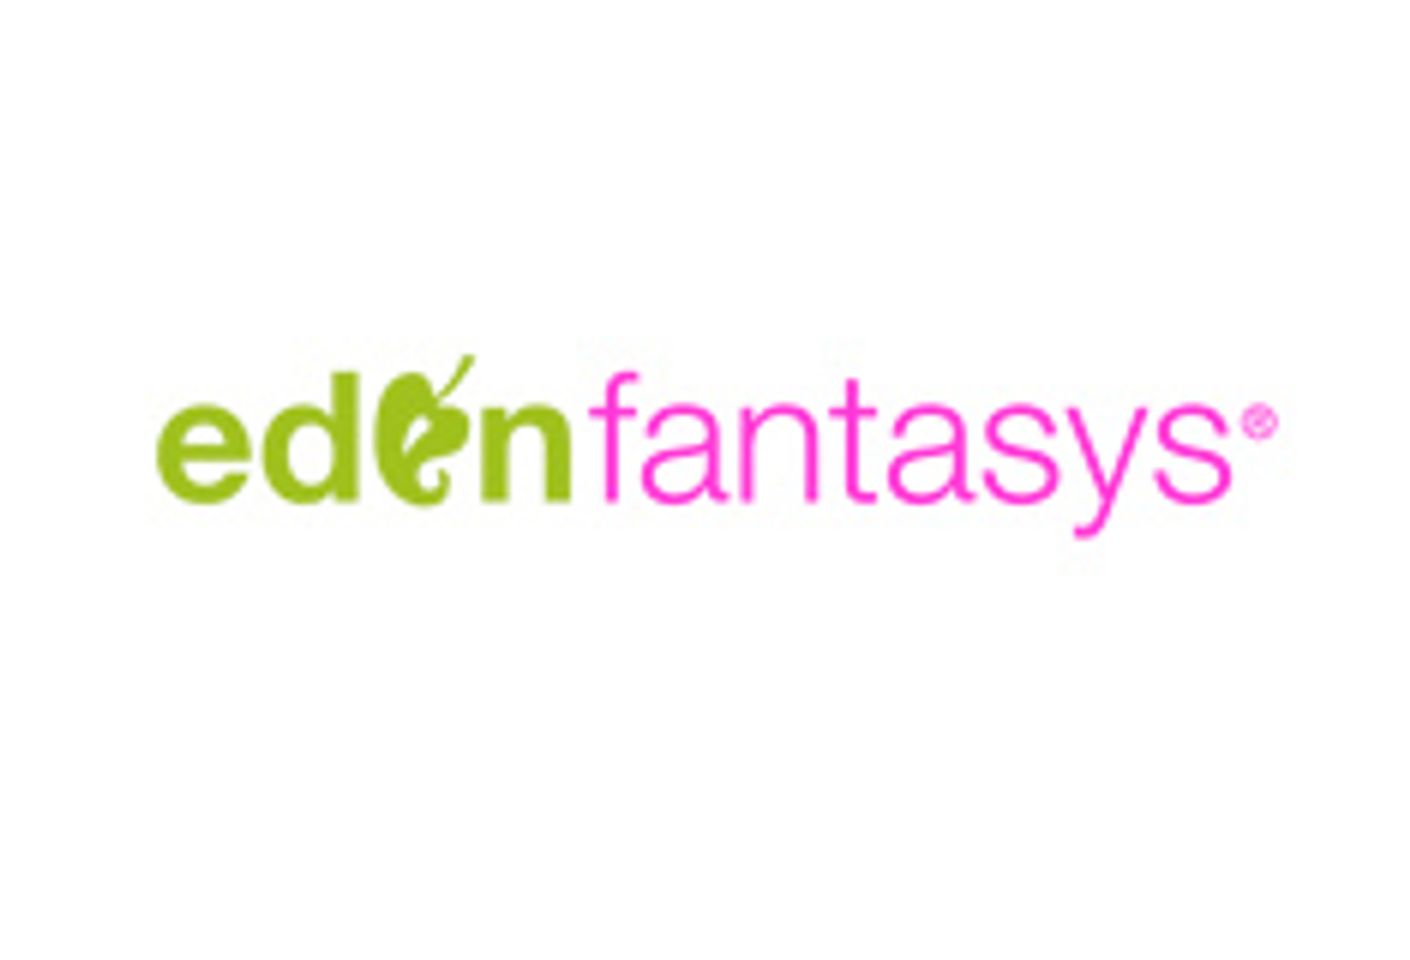 EdenFantasys Signs On As Official Sponsor at BlogHer 2010